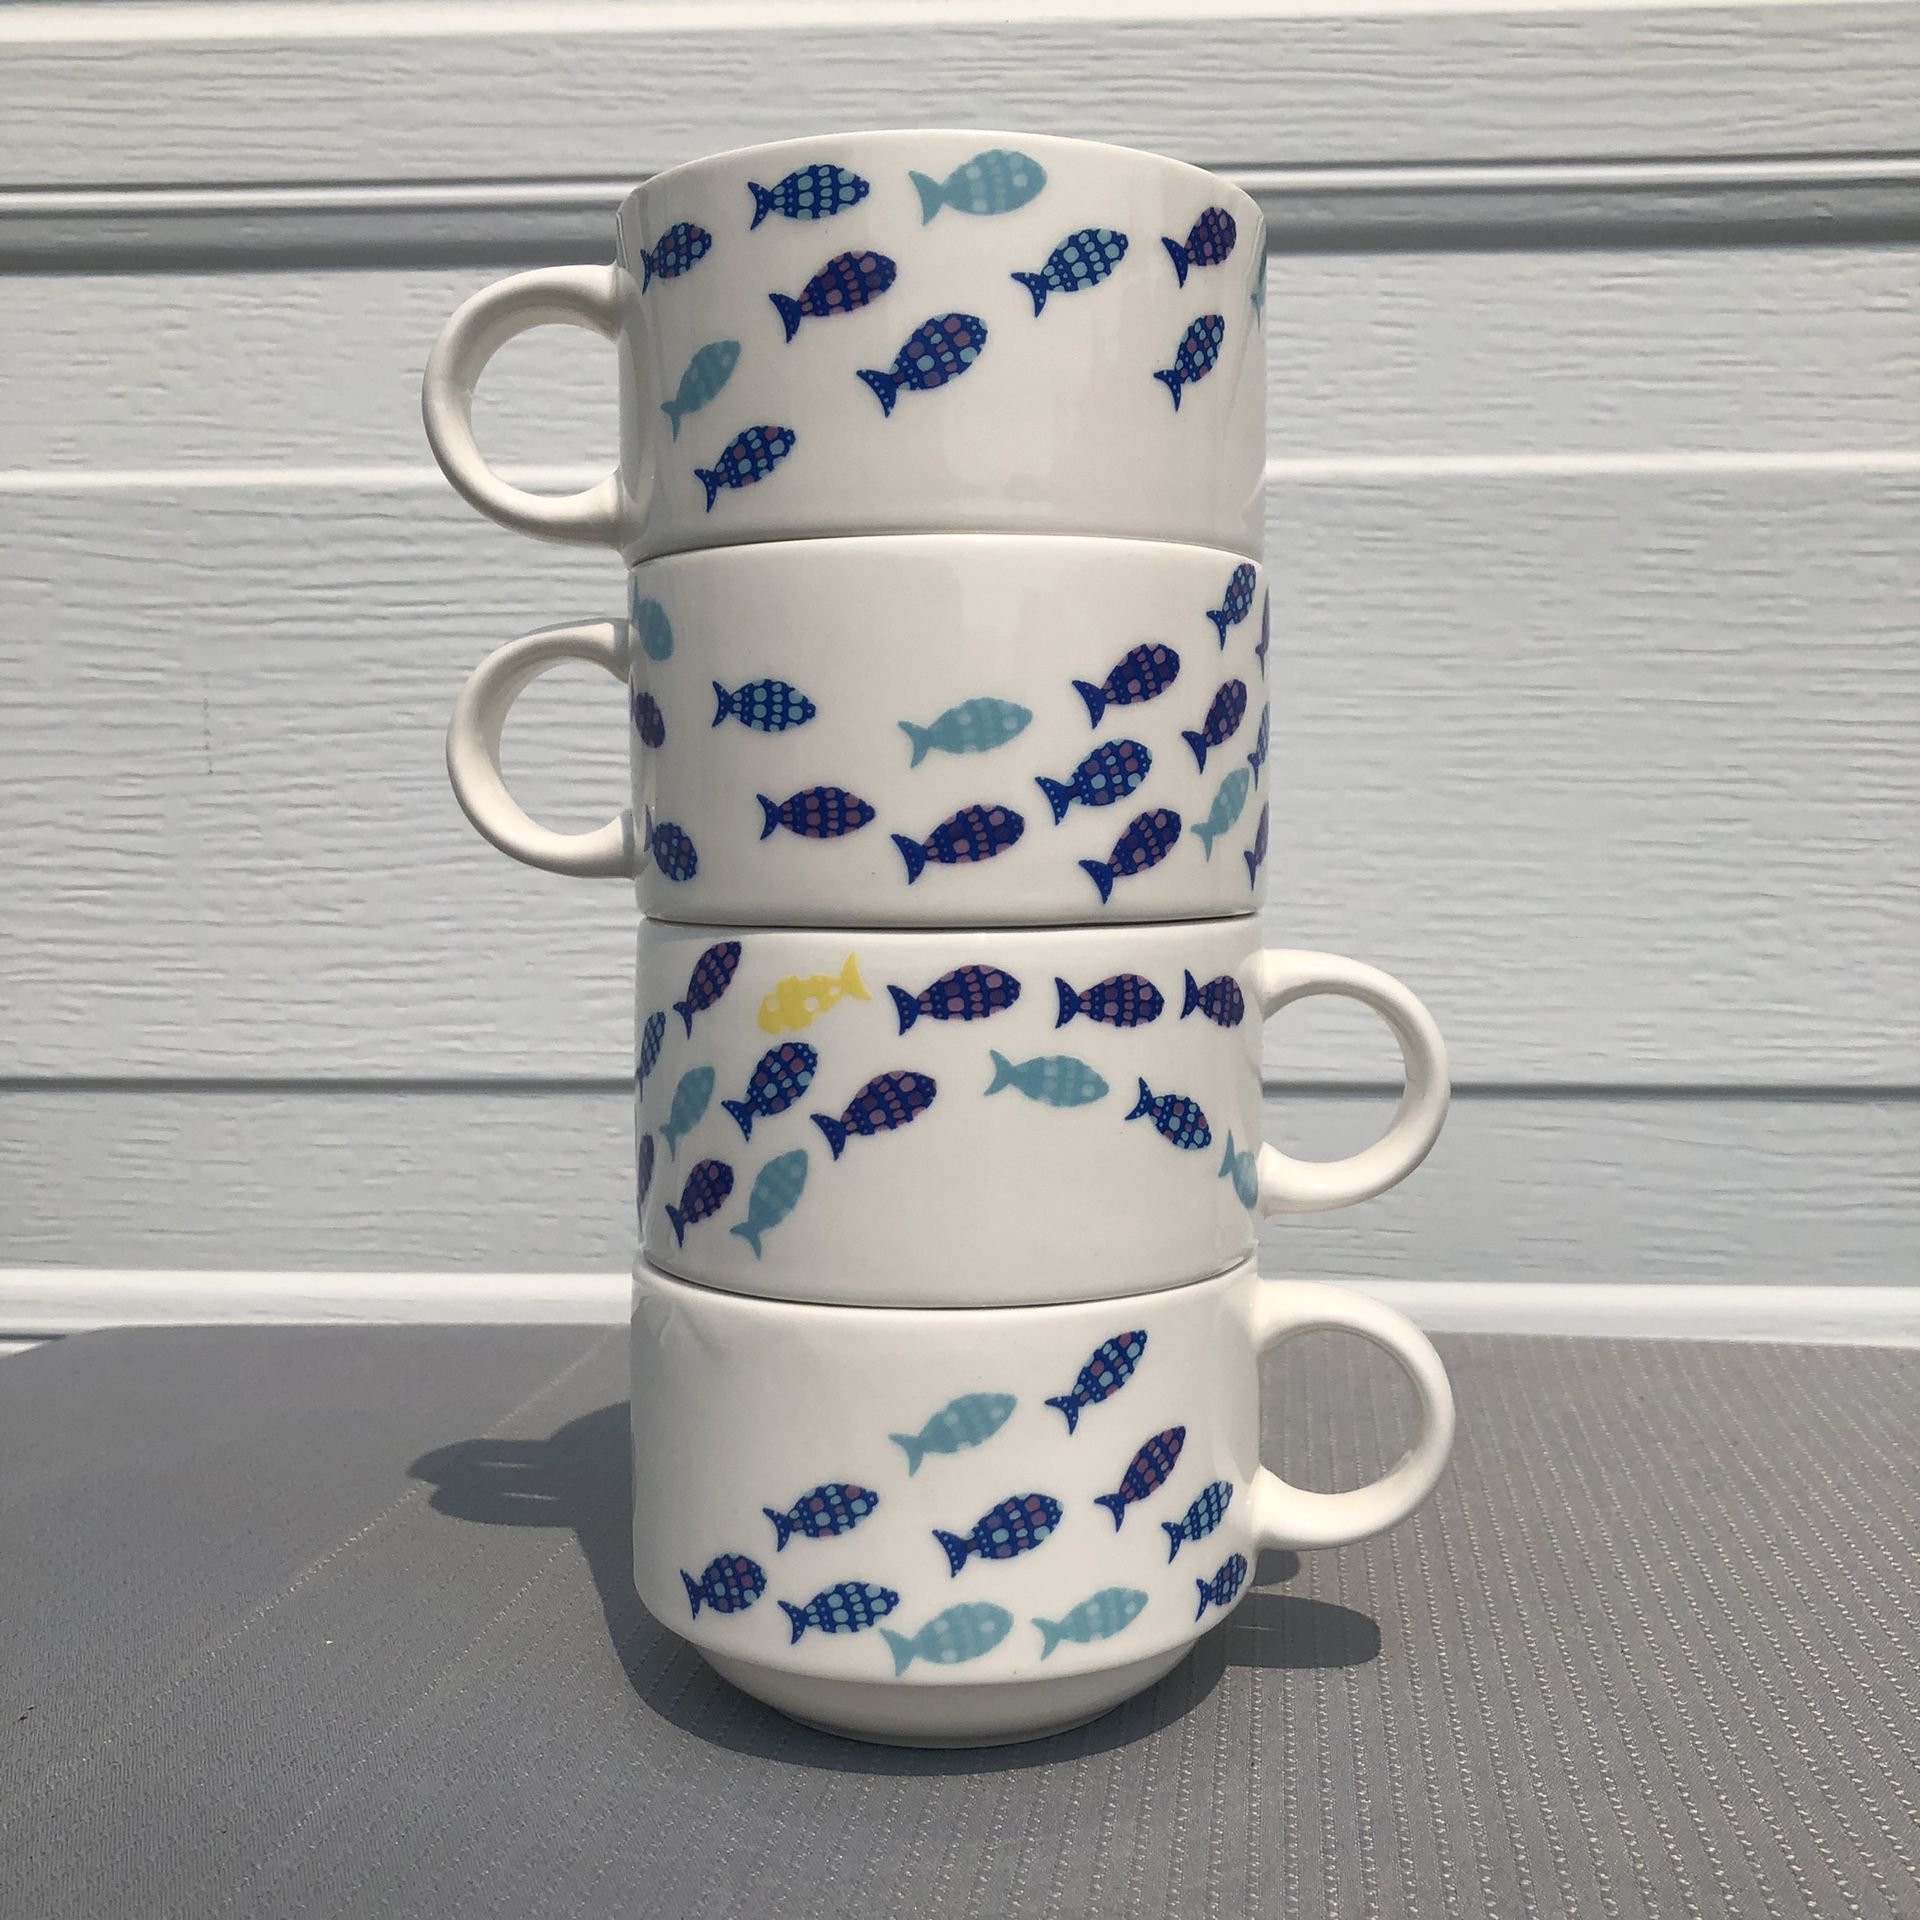 David’s Tea Stackable Ceramic Fish Mugs Cups